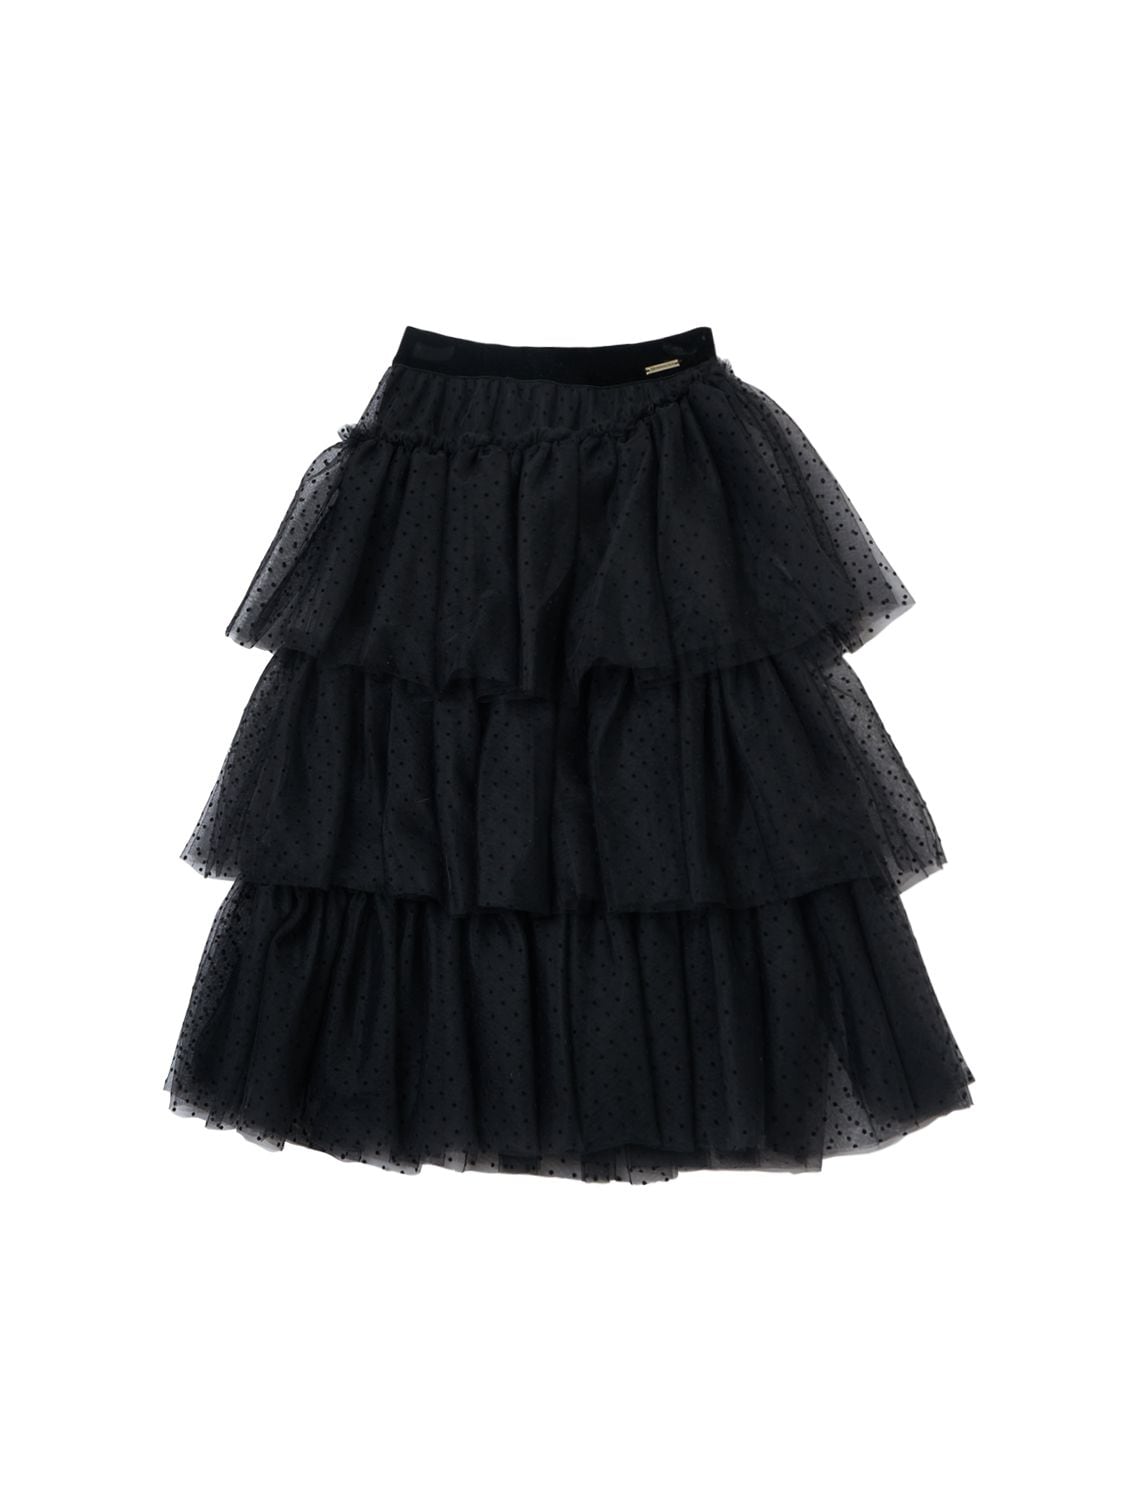 Monnalisa Kids' Flocked Polka Dot Tulle Skirt In Black